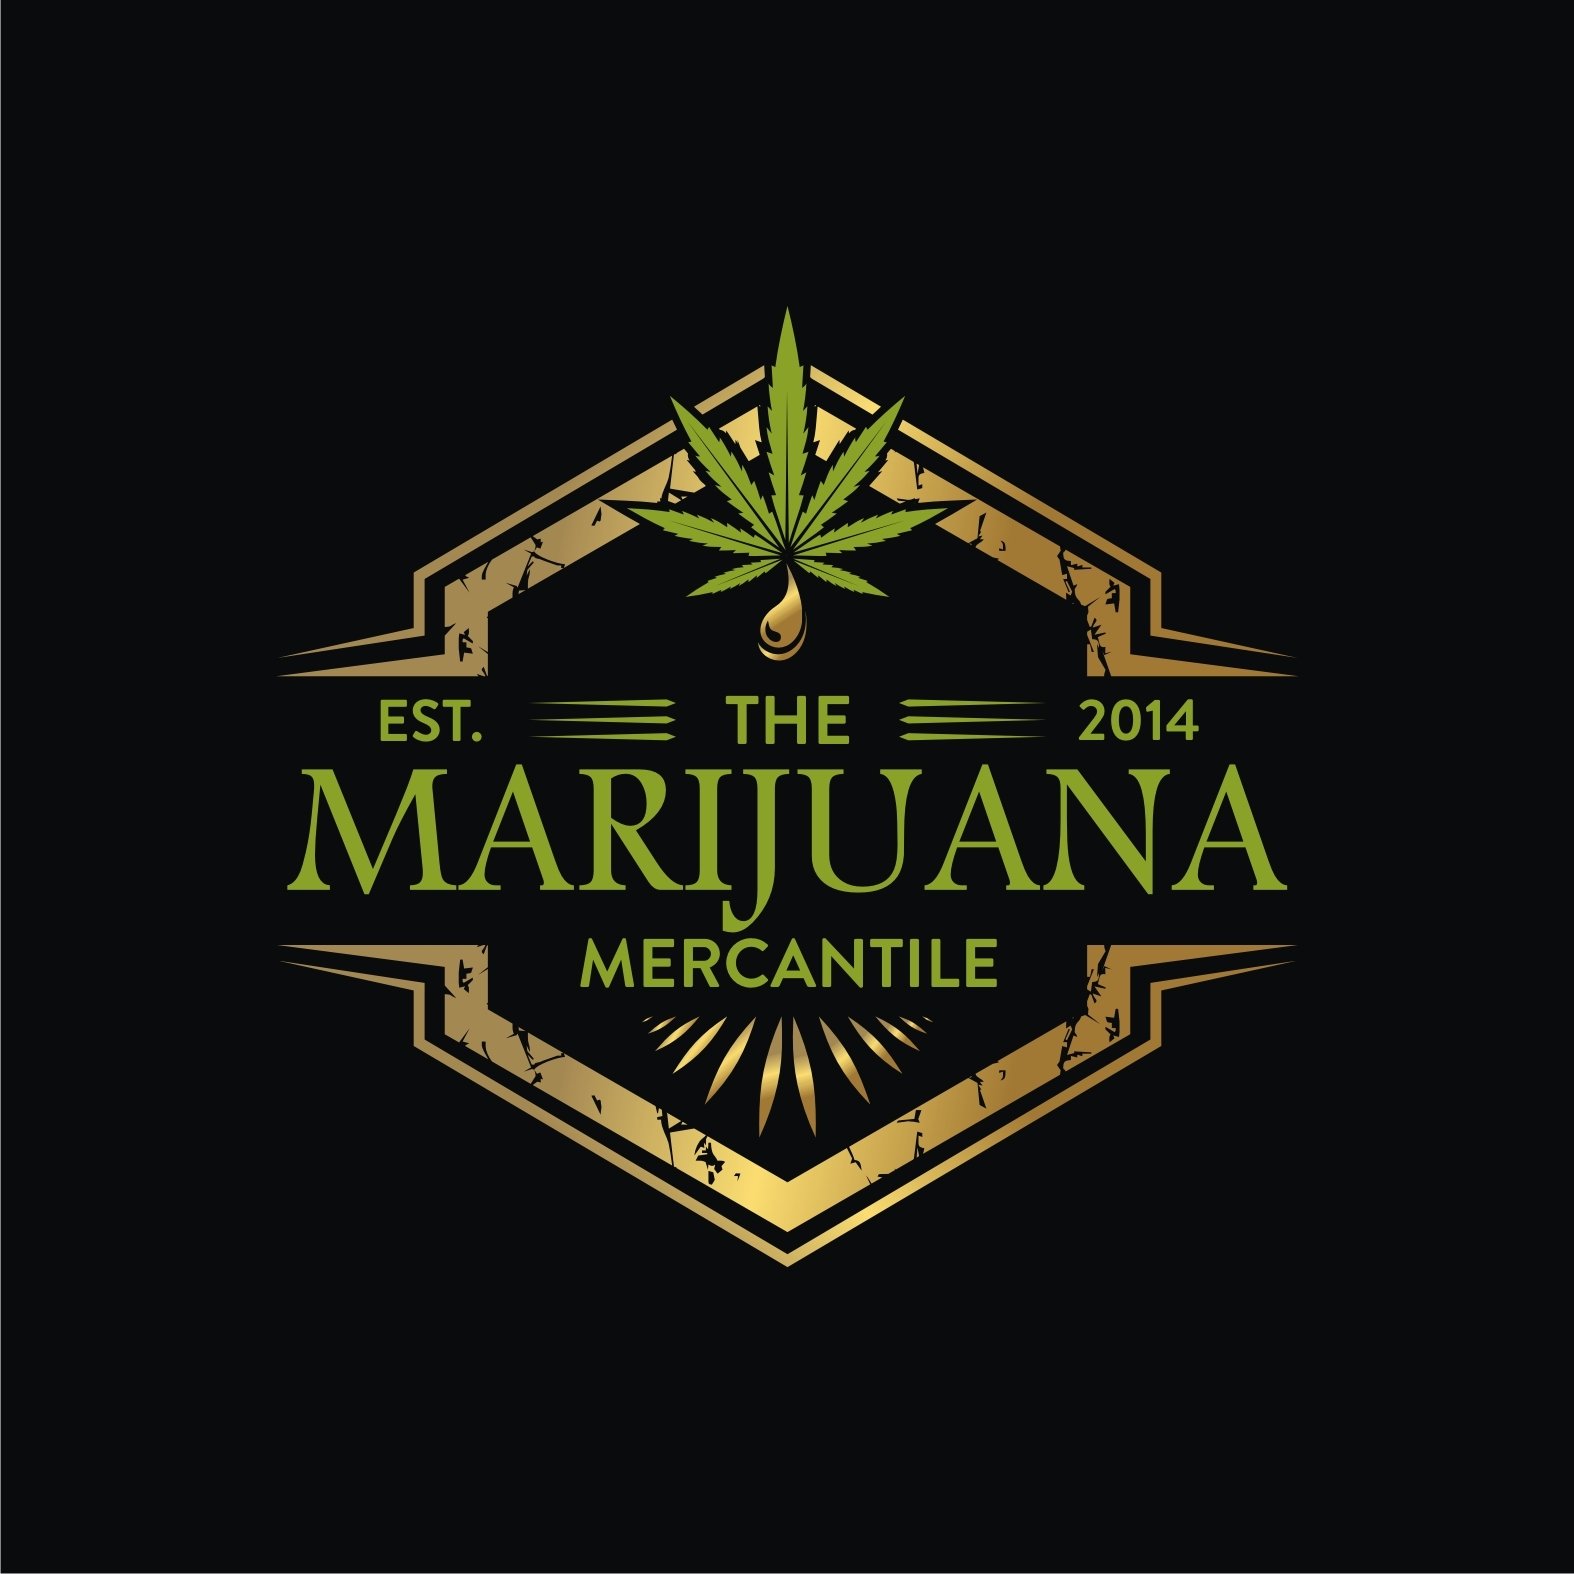 The Marijuana Mercantile logo